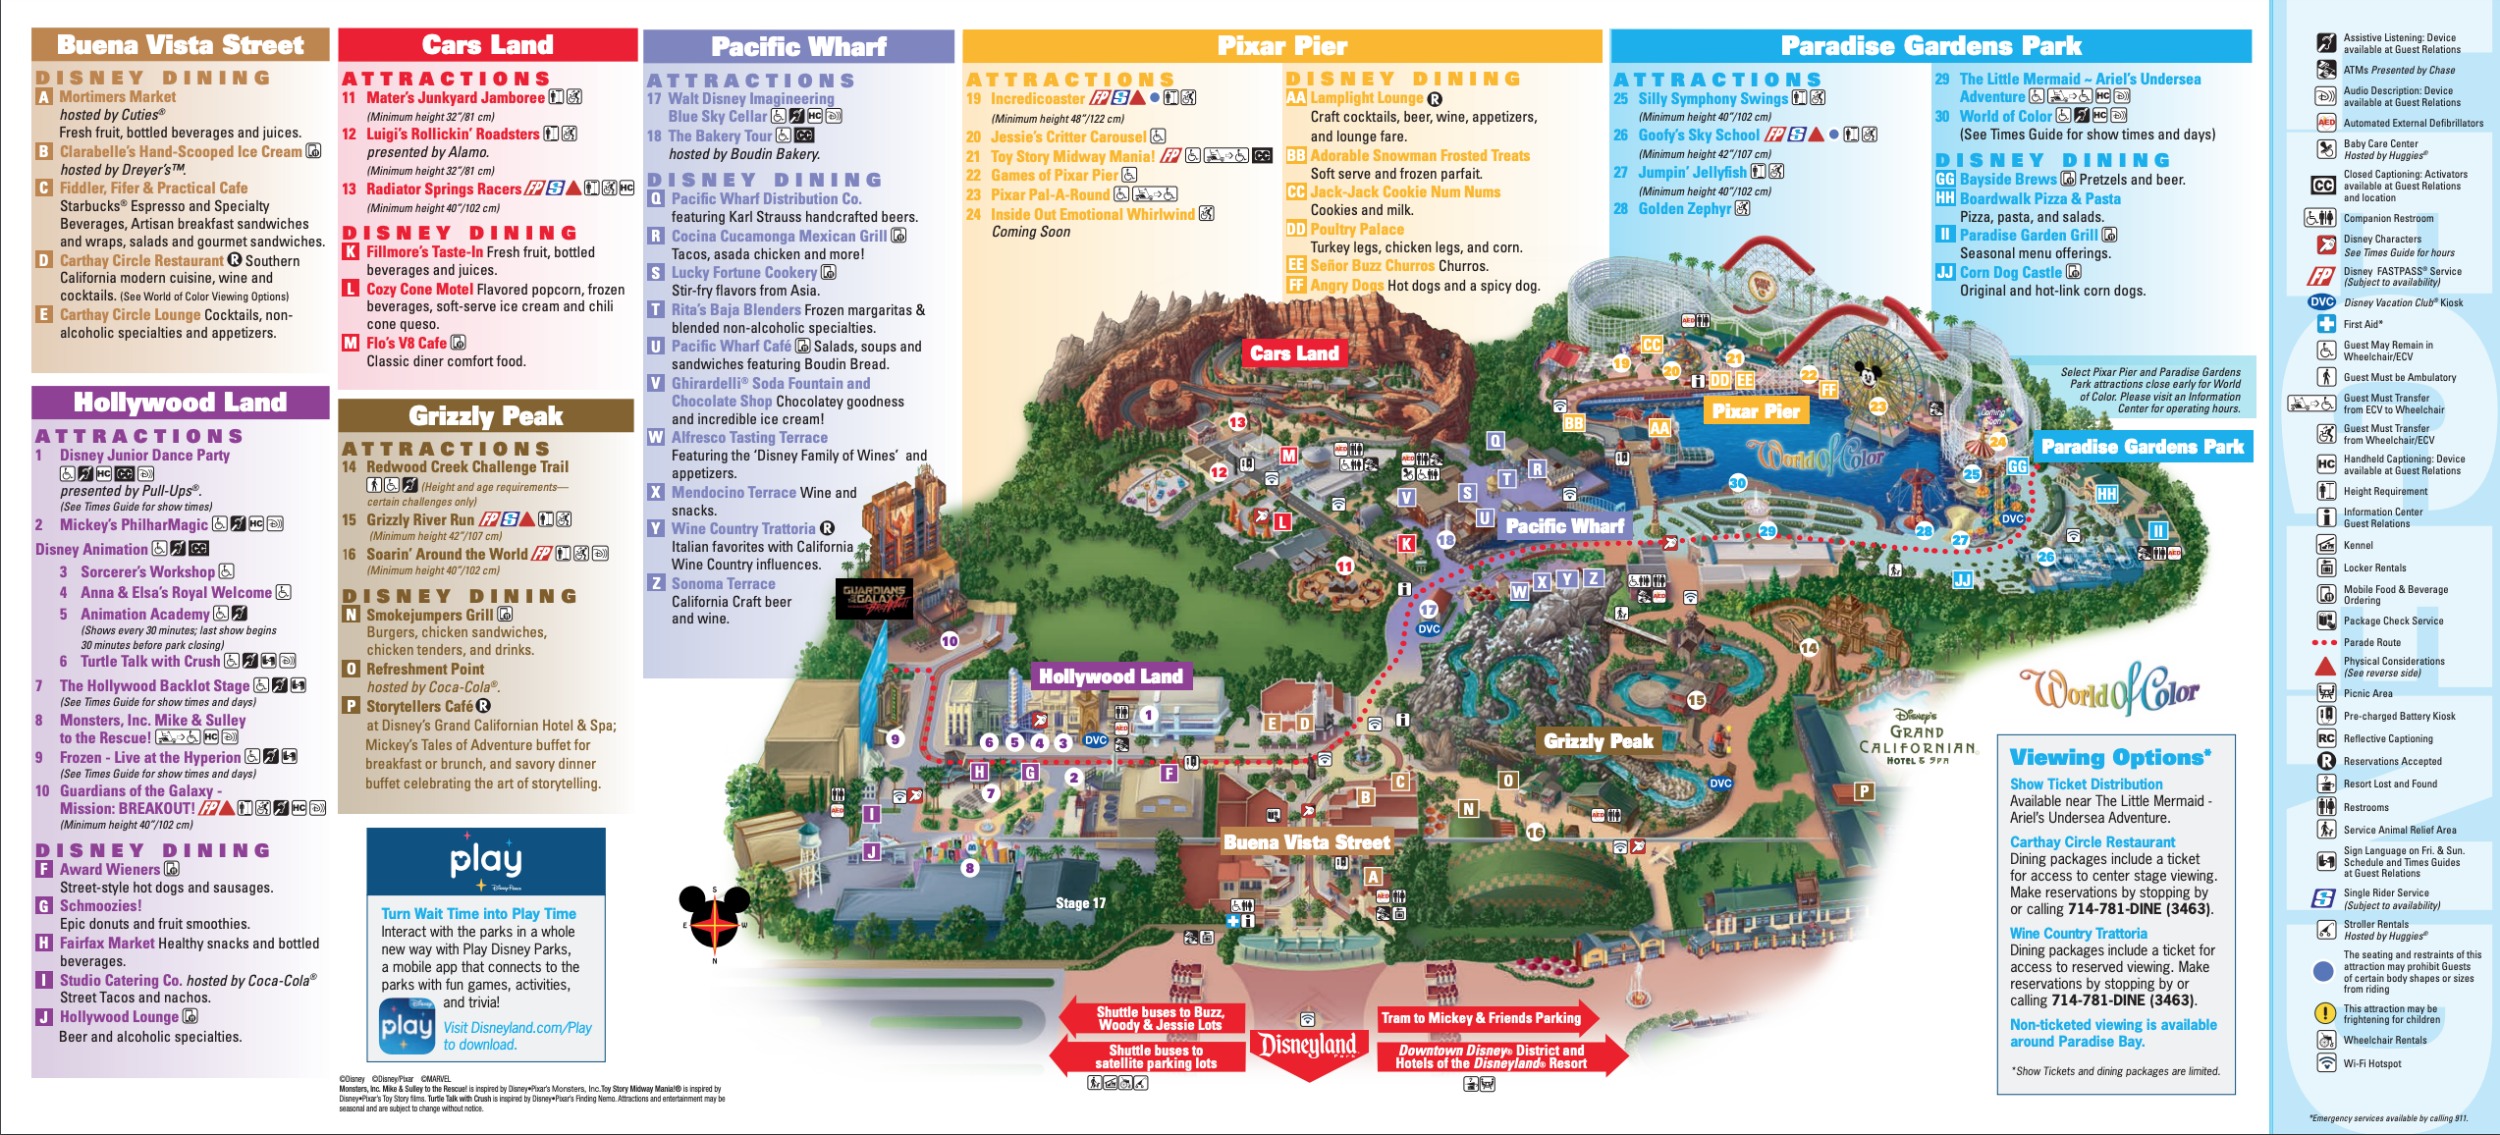 Disneyland Resort Map Tours by locals